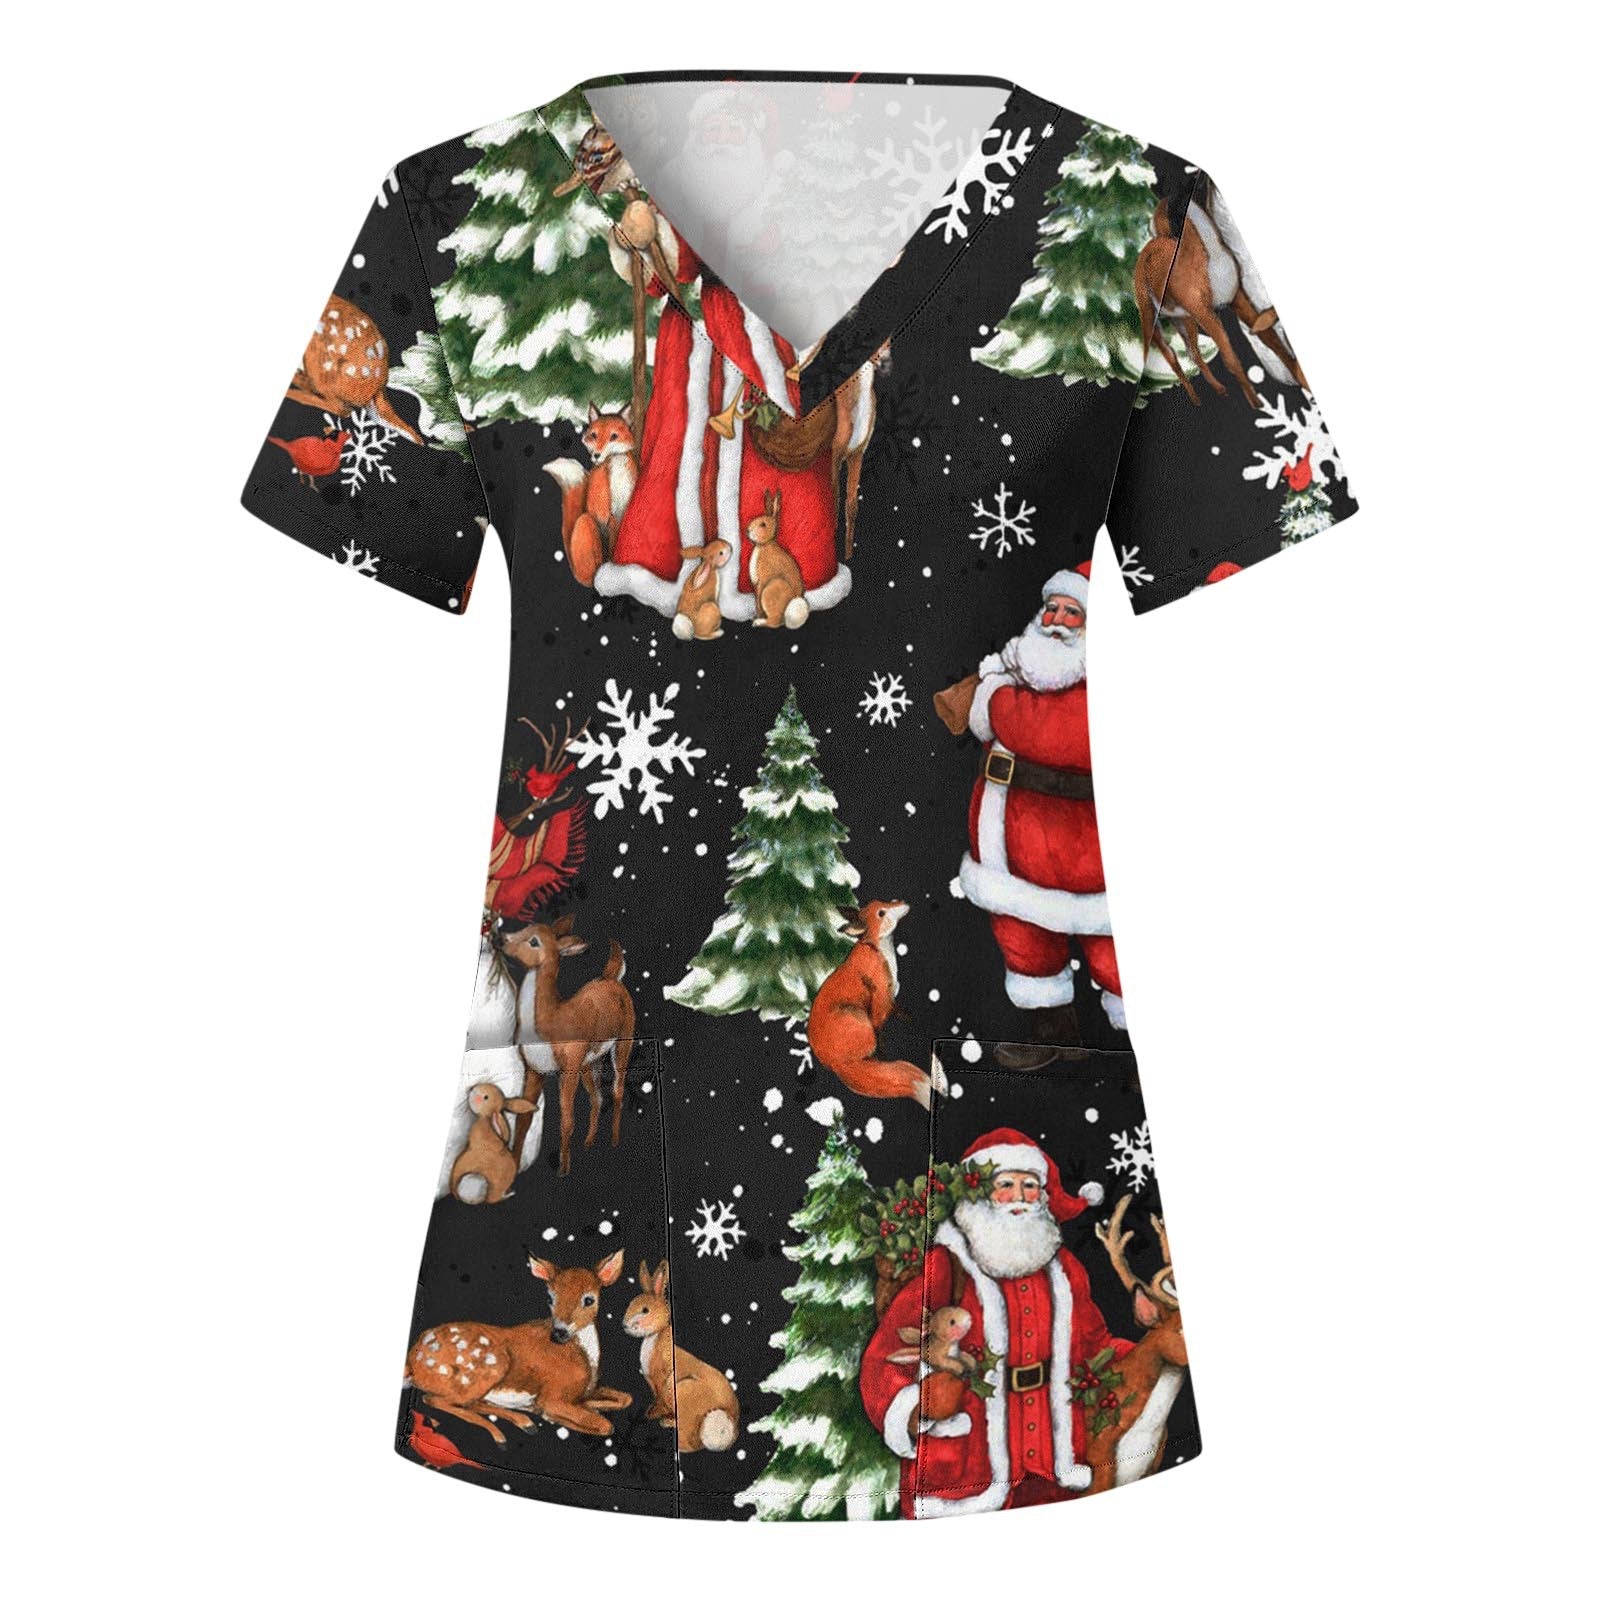 Women's Christmas V-neck Printed Sleeve T-shirt Blouses